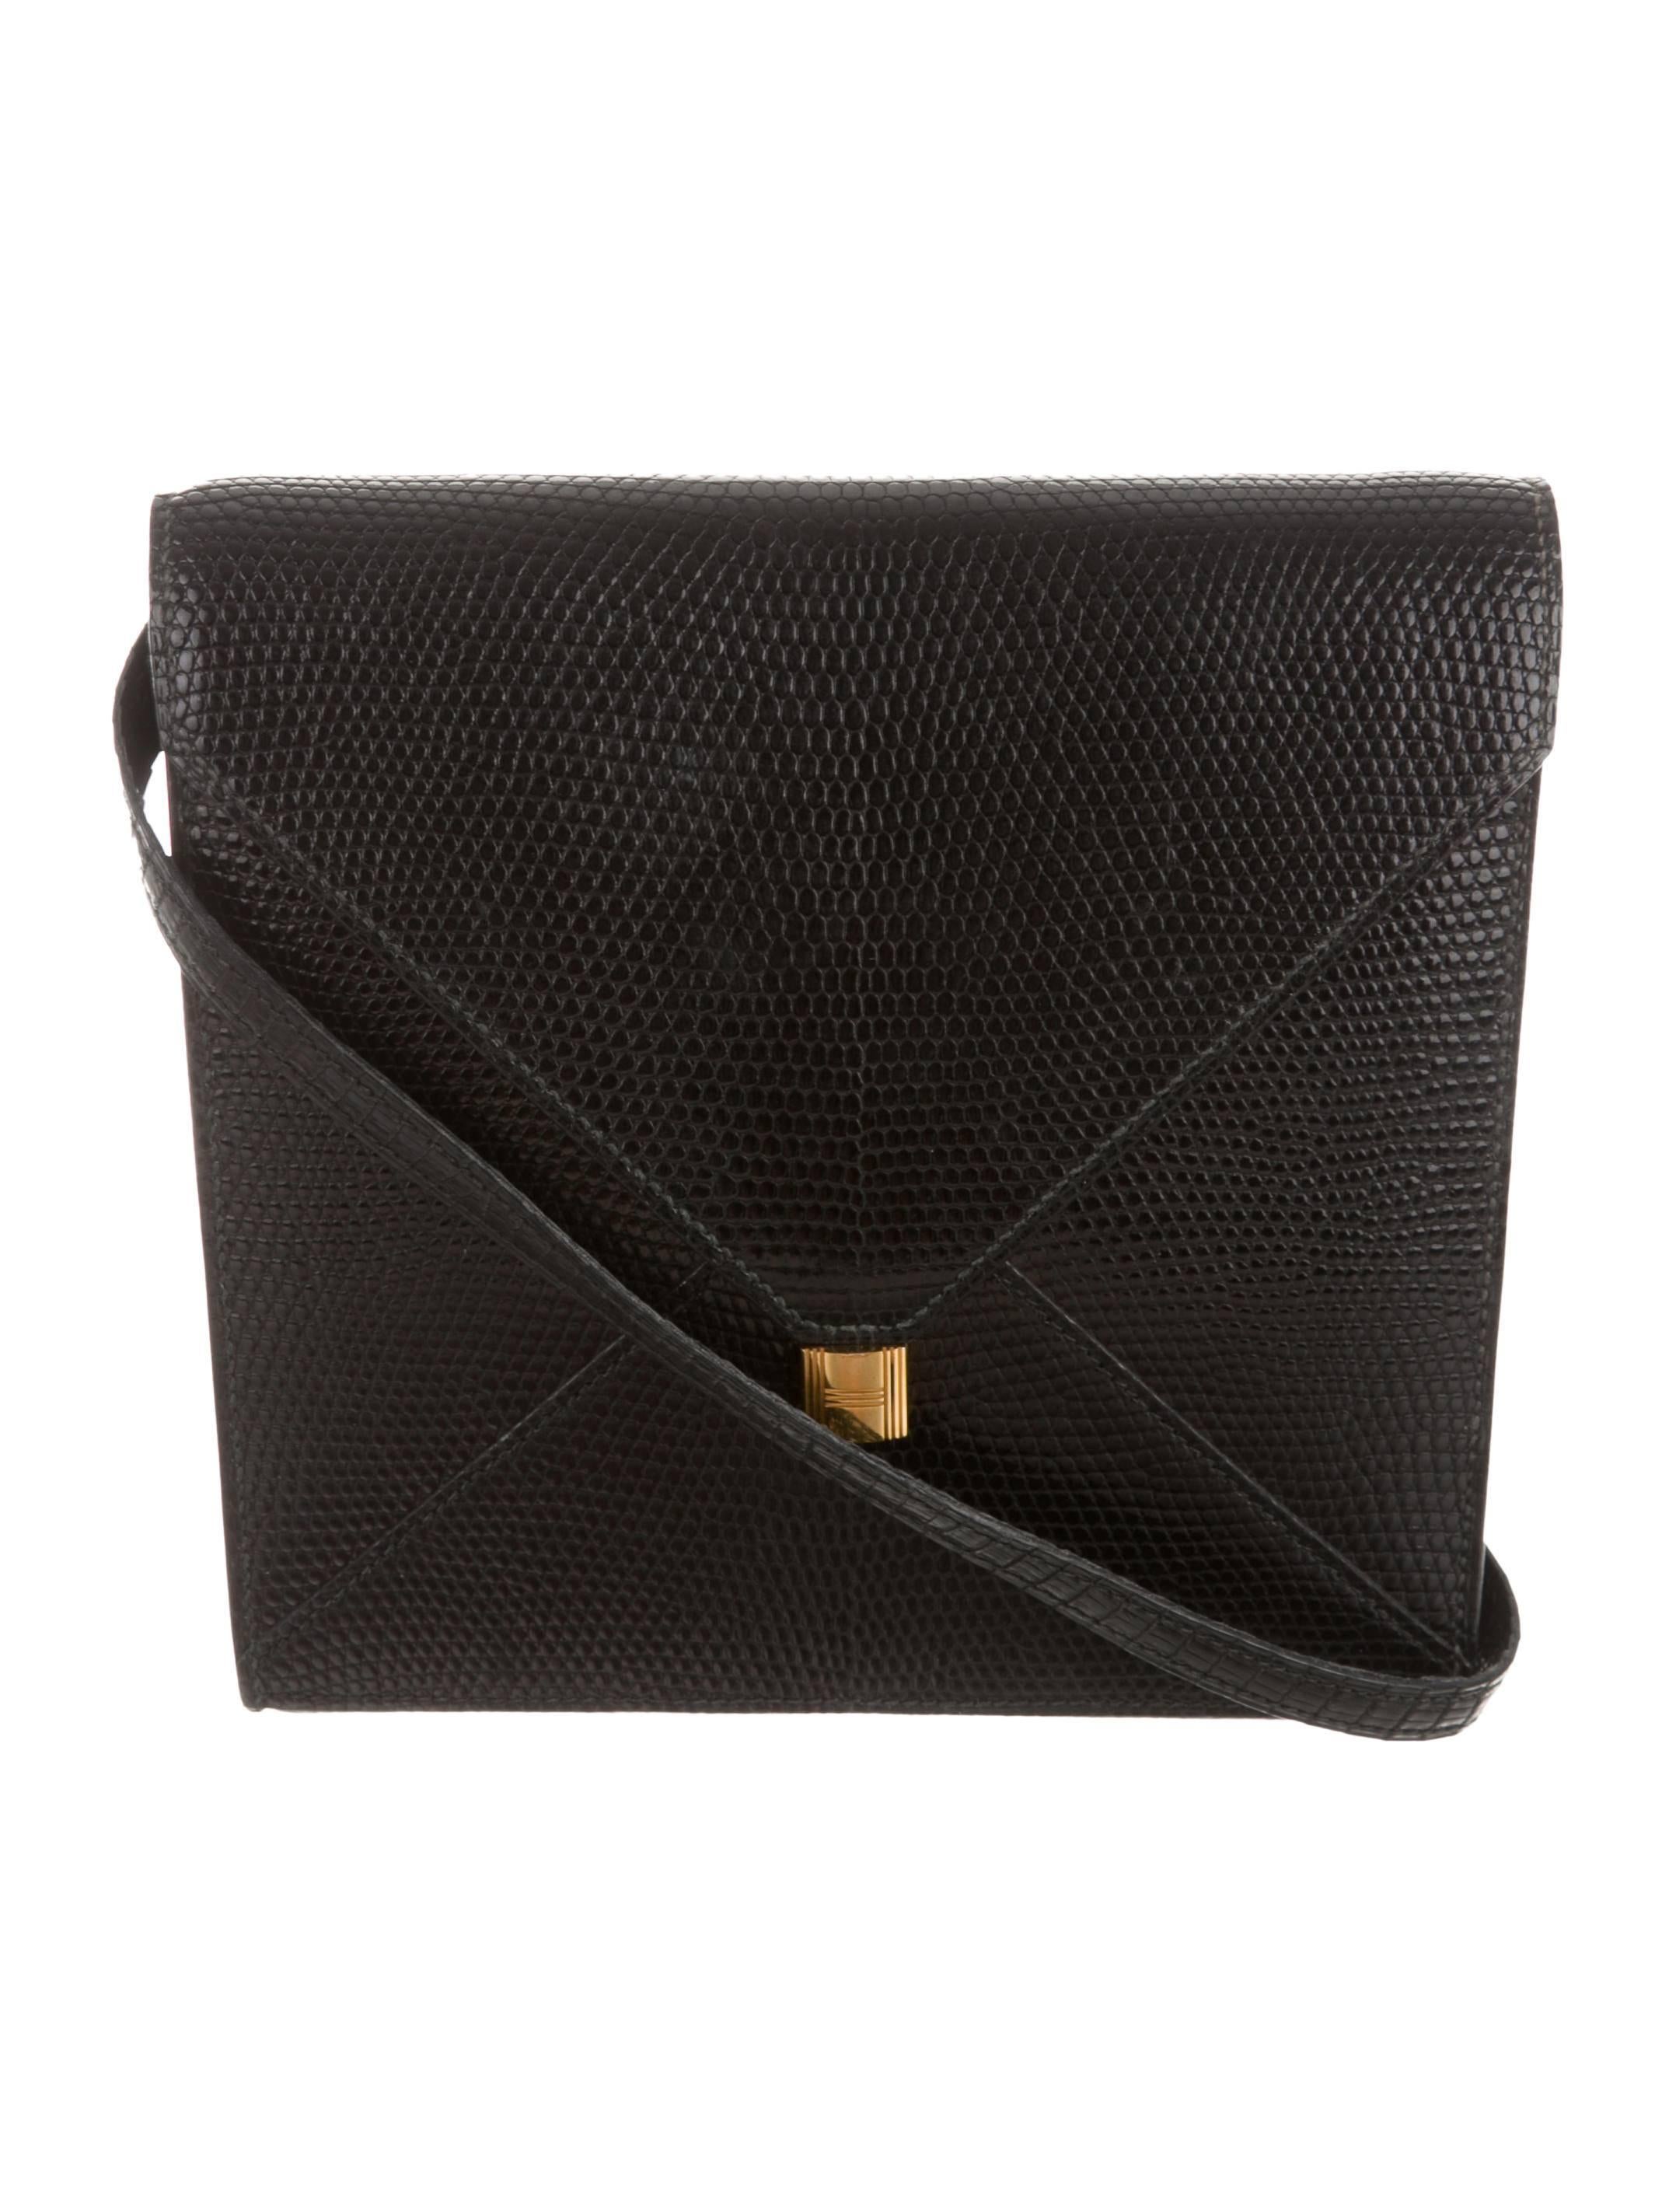 Women's Hermes Black Lizard Leather Kelly Lock Gold Hardware Envelope Shoulder Bag